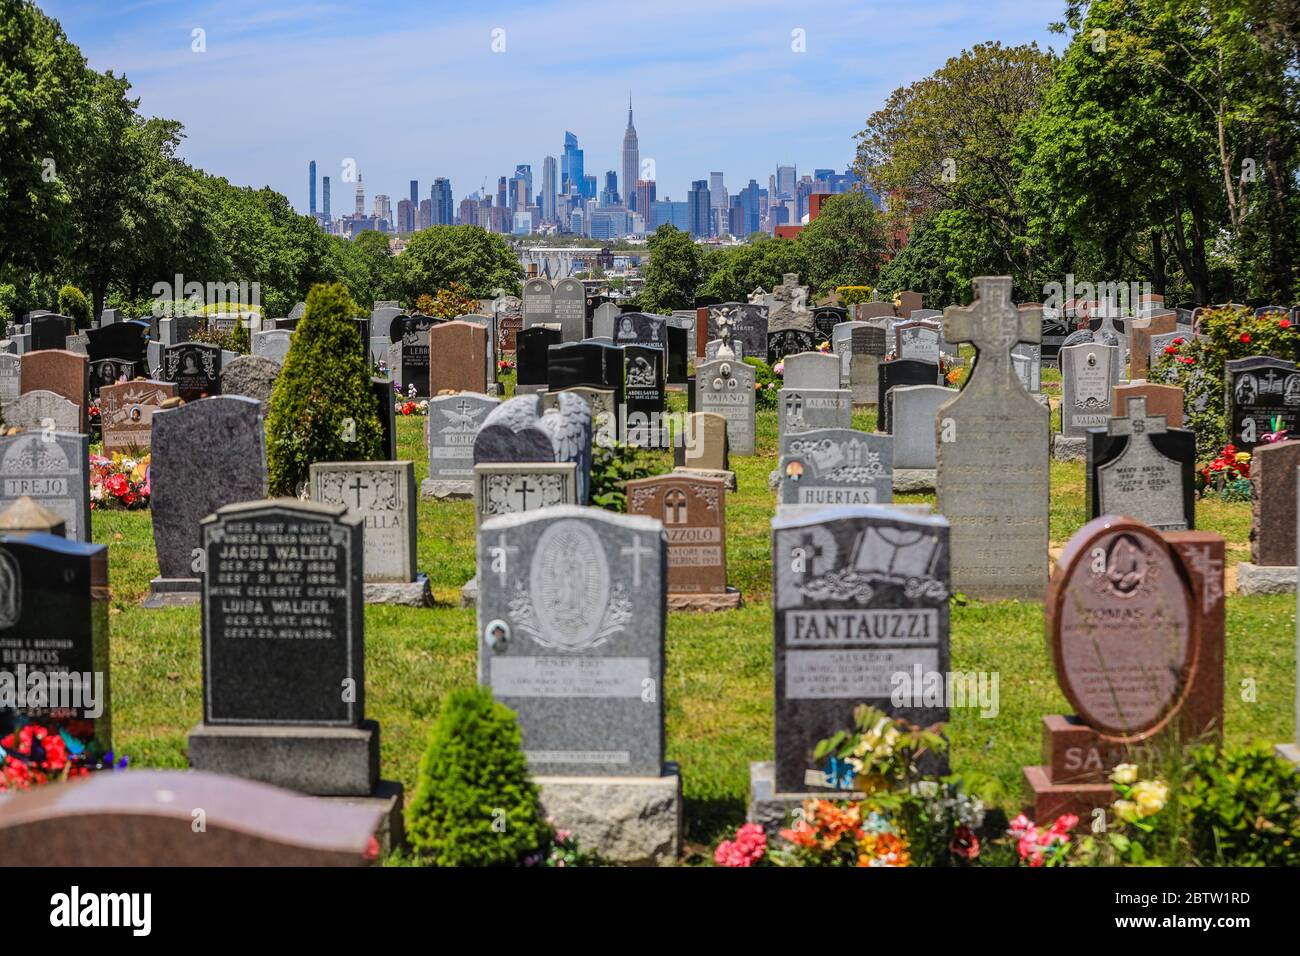 New York, Stati Uniti. 20 Maggio 2020. Manhattan Island è vista in fondo ad un cimitero nel quartiere Queens di New York durante la pandemia di Coronavirus COVID-19 negli Stati Uniti. Oggi il paese ha superato il numero di 100,000 morti per pandemia. Credit: Brazil Photo Press/Alamy Live News Foto Stock